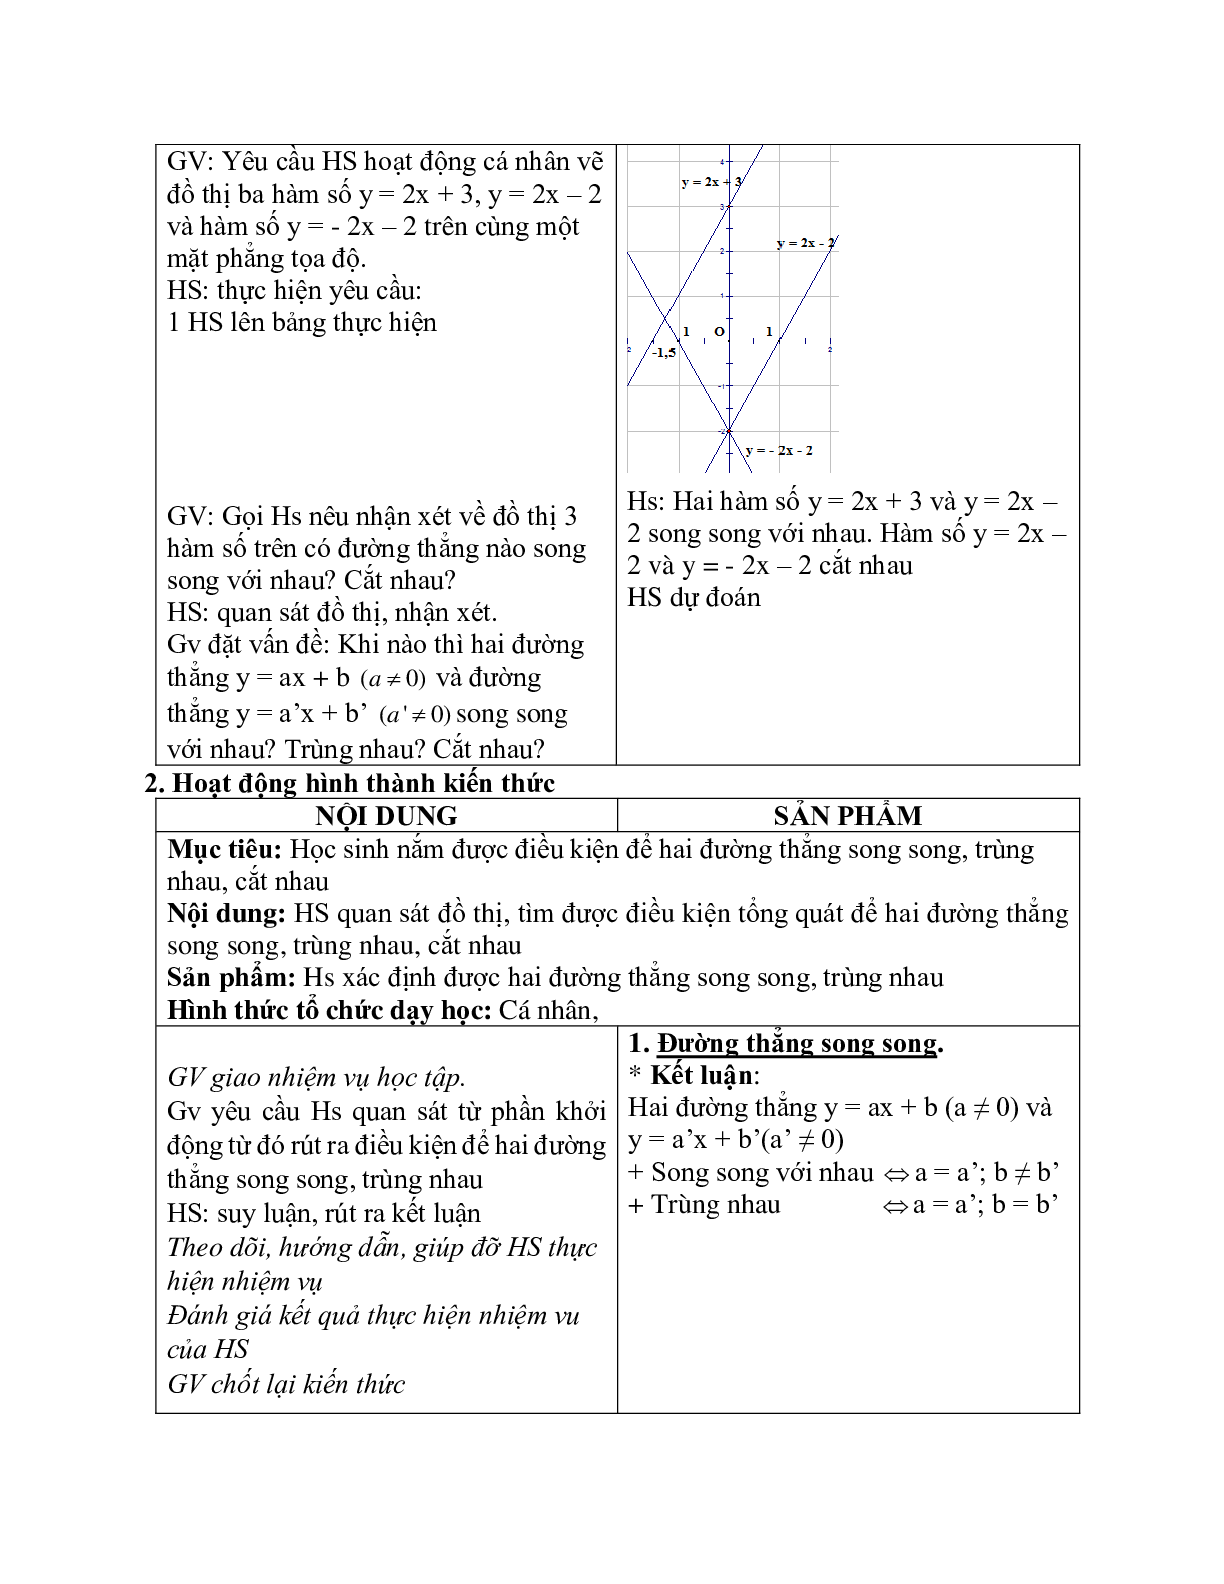 Giáo án Đường thẳng song song và đường thẳng cắt nhau (2023) mới nhất - Toán 9 (trang 2)